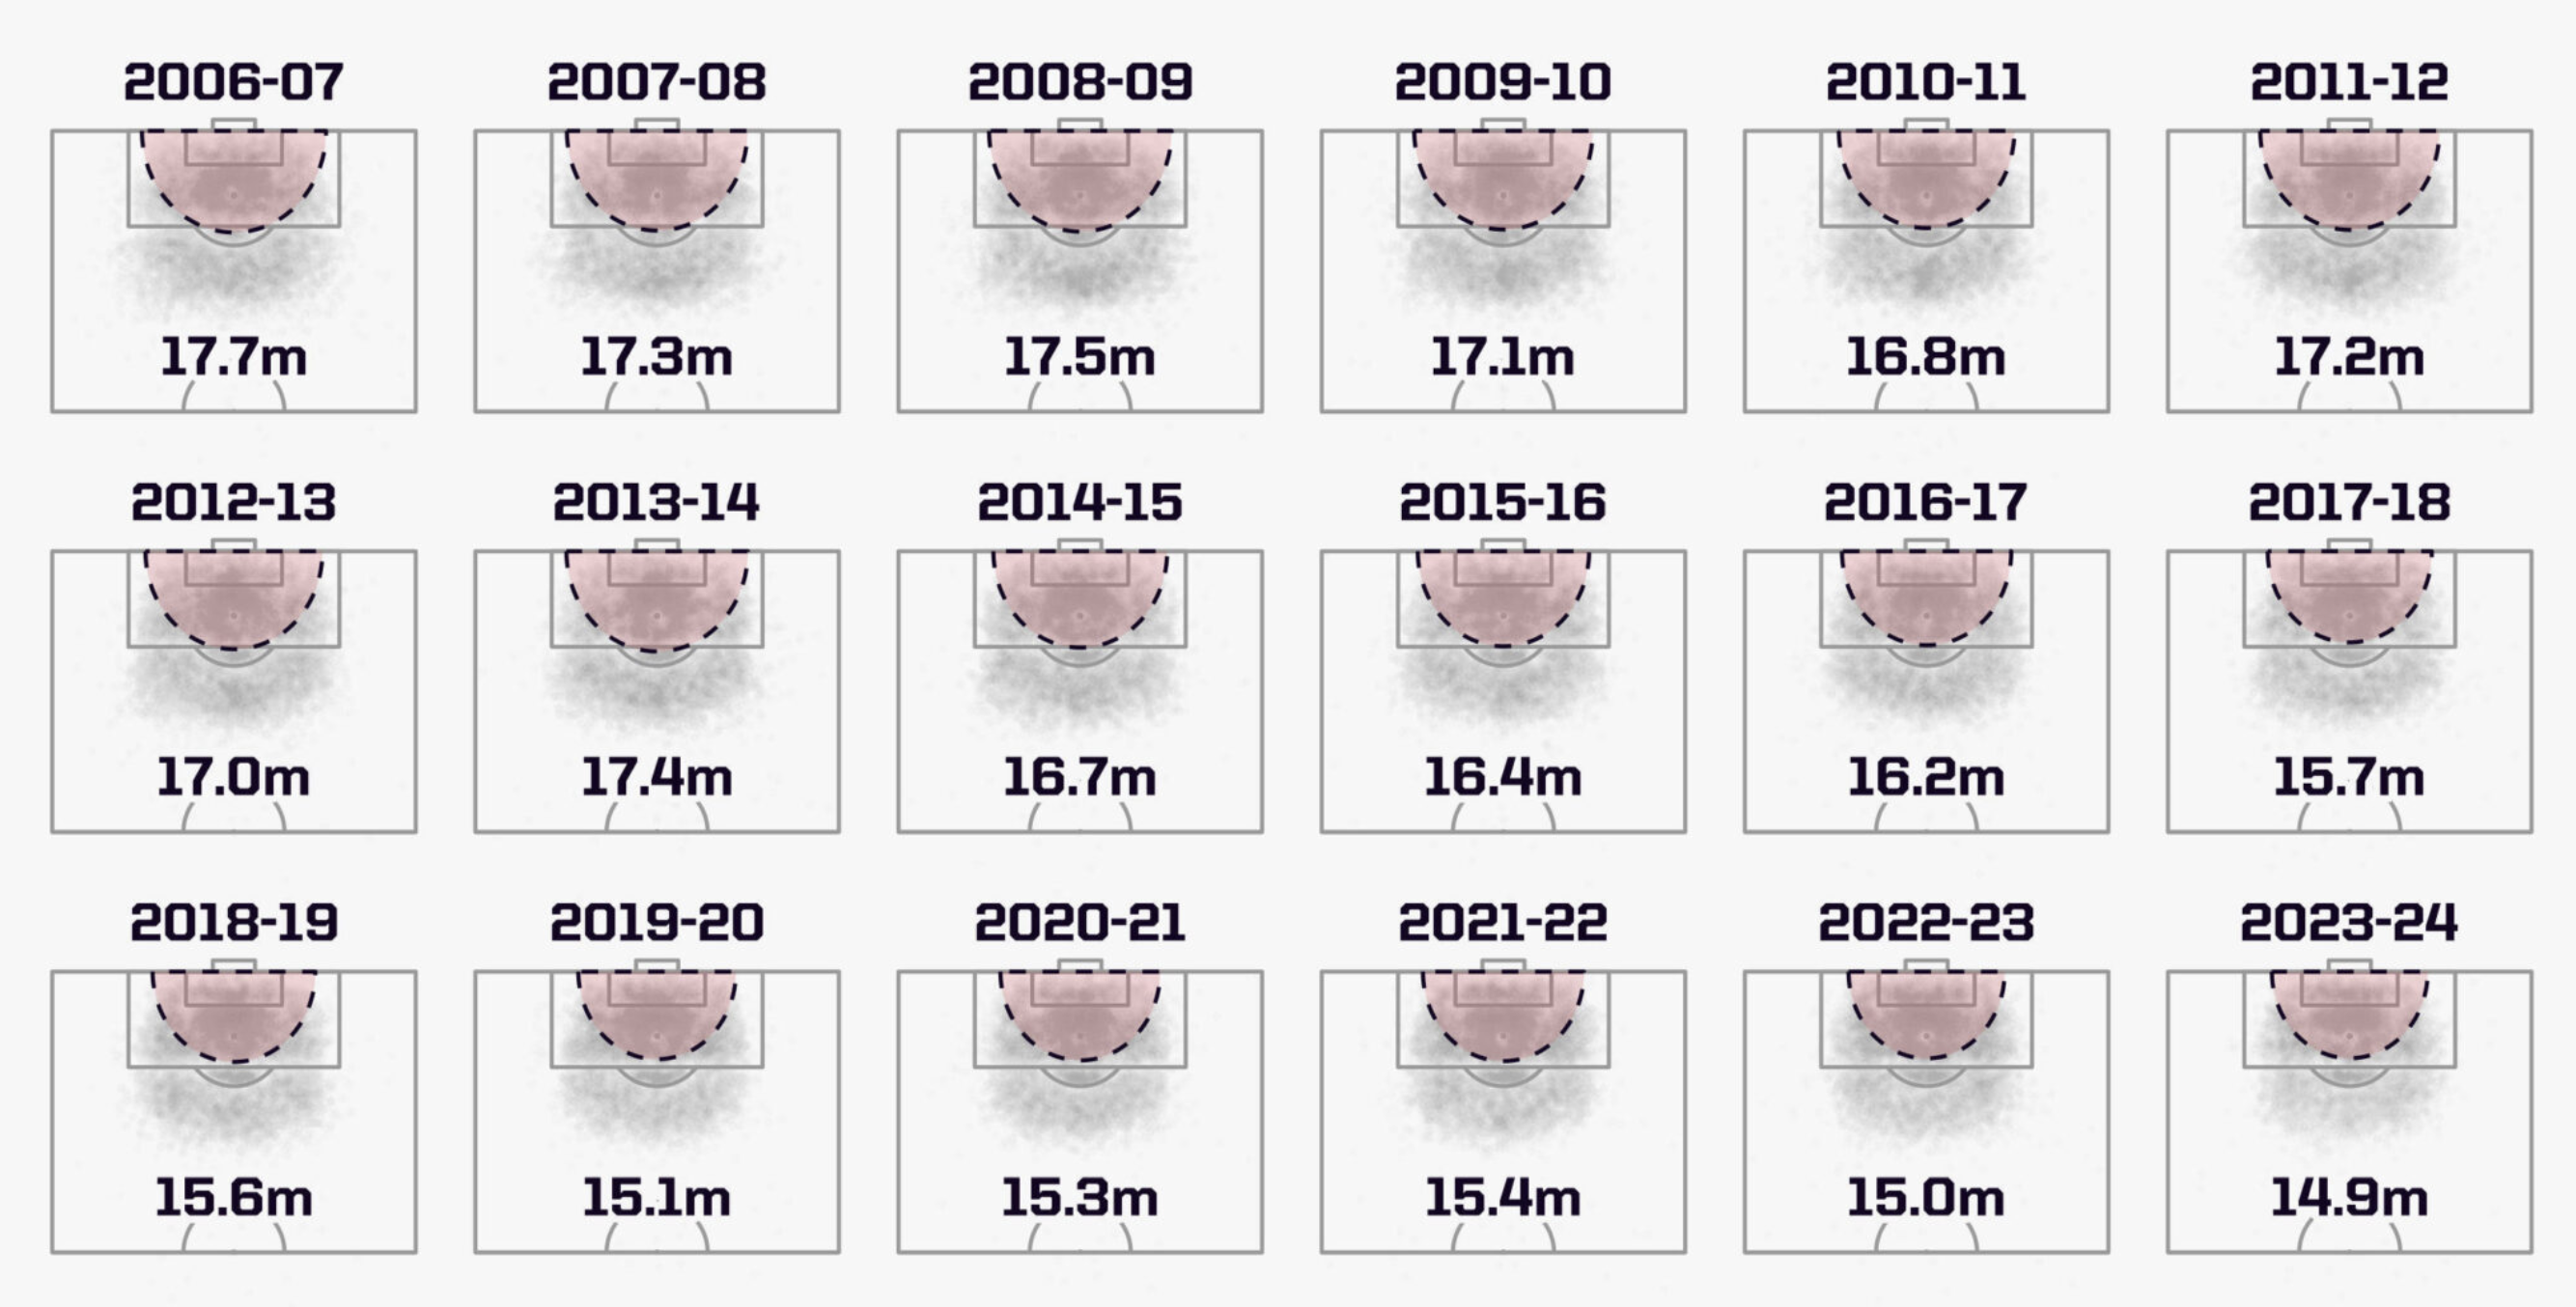 أماكن التسديد في الدوري الإنجليزي الممتاز عبر السنوات (Opta)